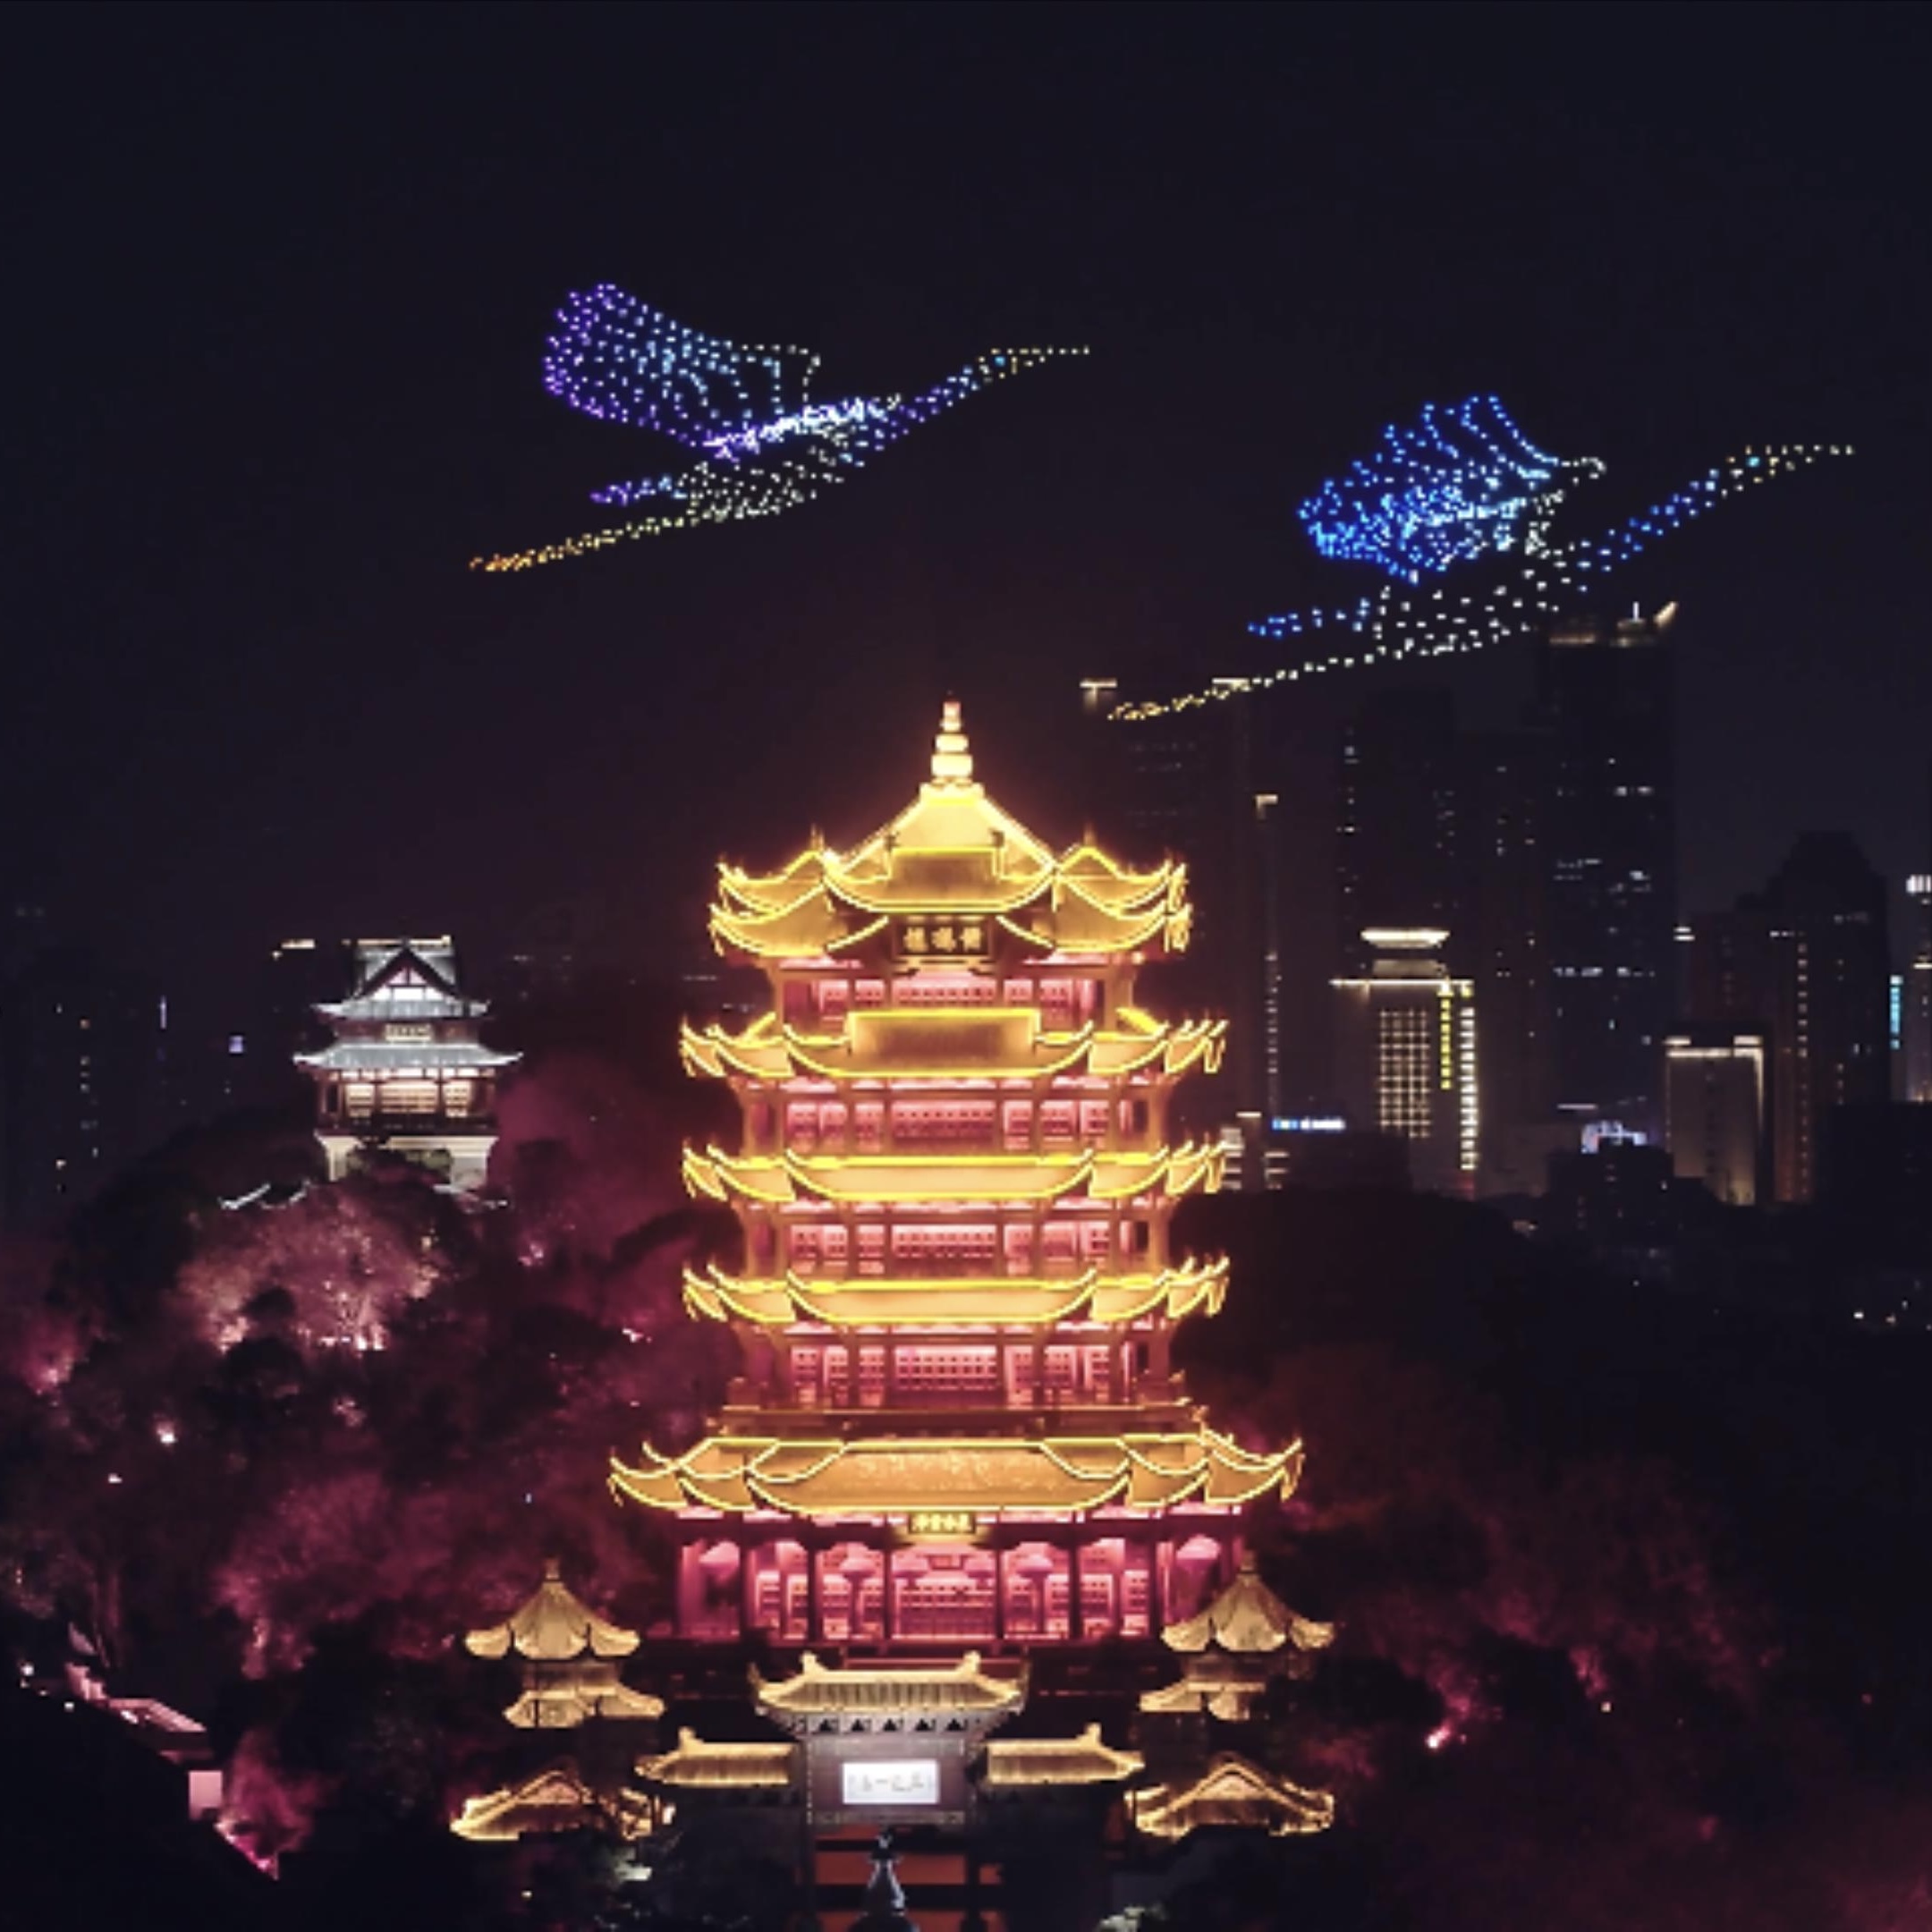 Show de luzes de drones da Conferência de Poesia de Wuhan ilumina a Torre do Guindaste Amarelo!